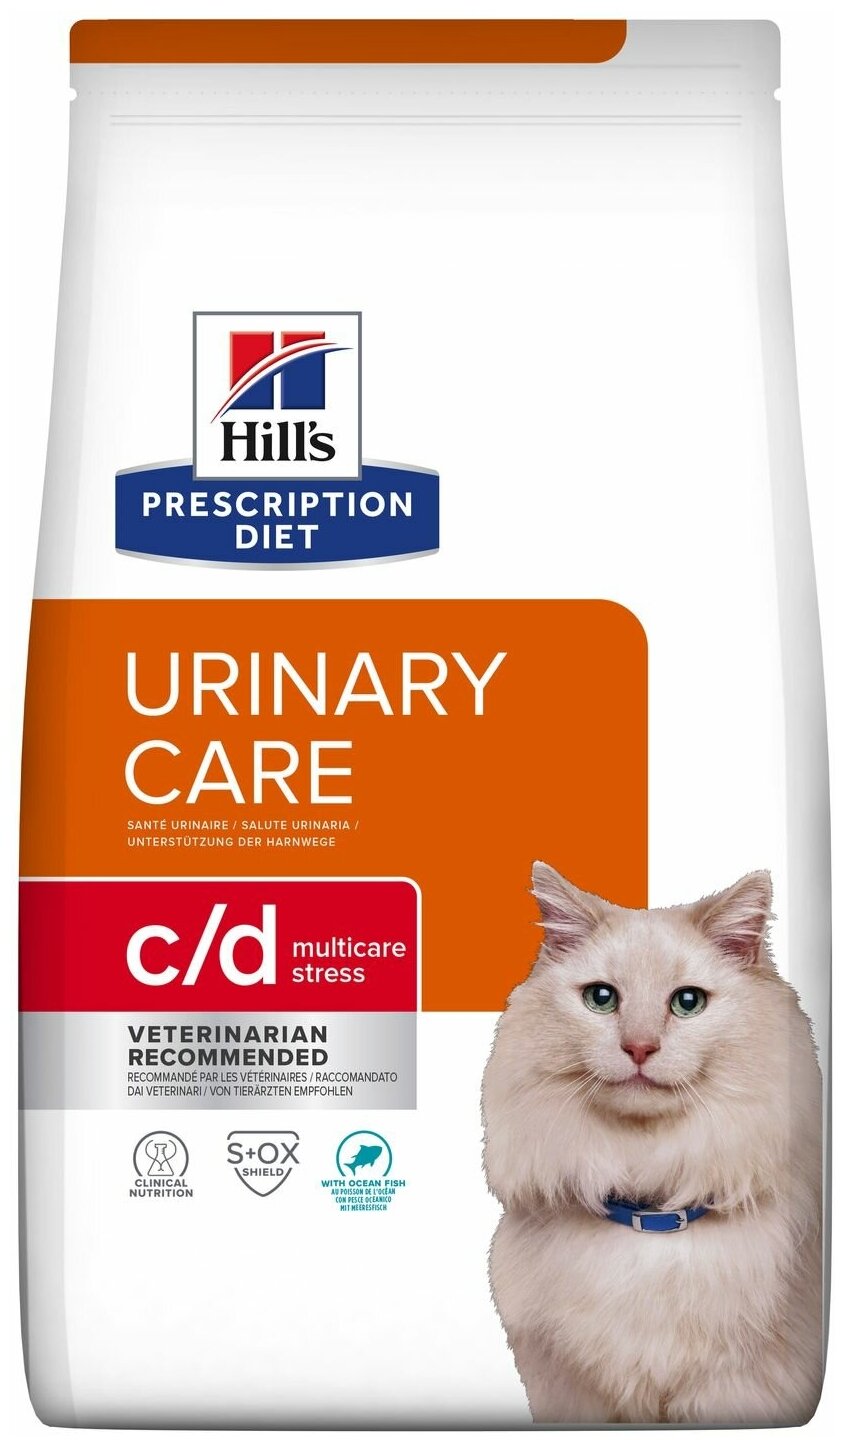 Сухой диетический корм для кошек Hill's Prescription Diet c/d Multicare Urinary Stress при профилактике цистита и мочекаменной болезни (мкб), в том числе вызванные стрессом, с океанической рыбой, 400г